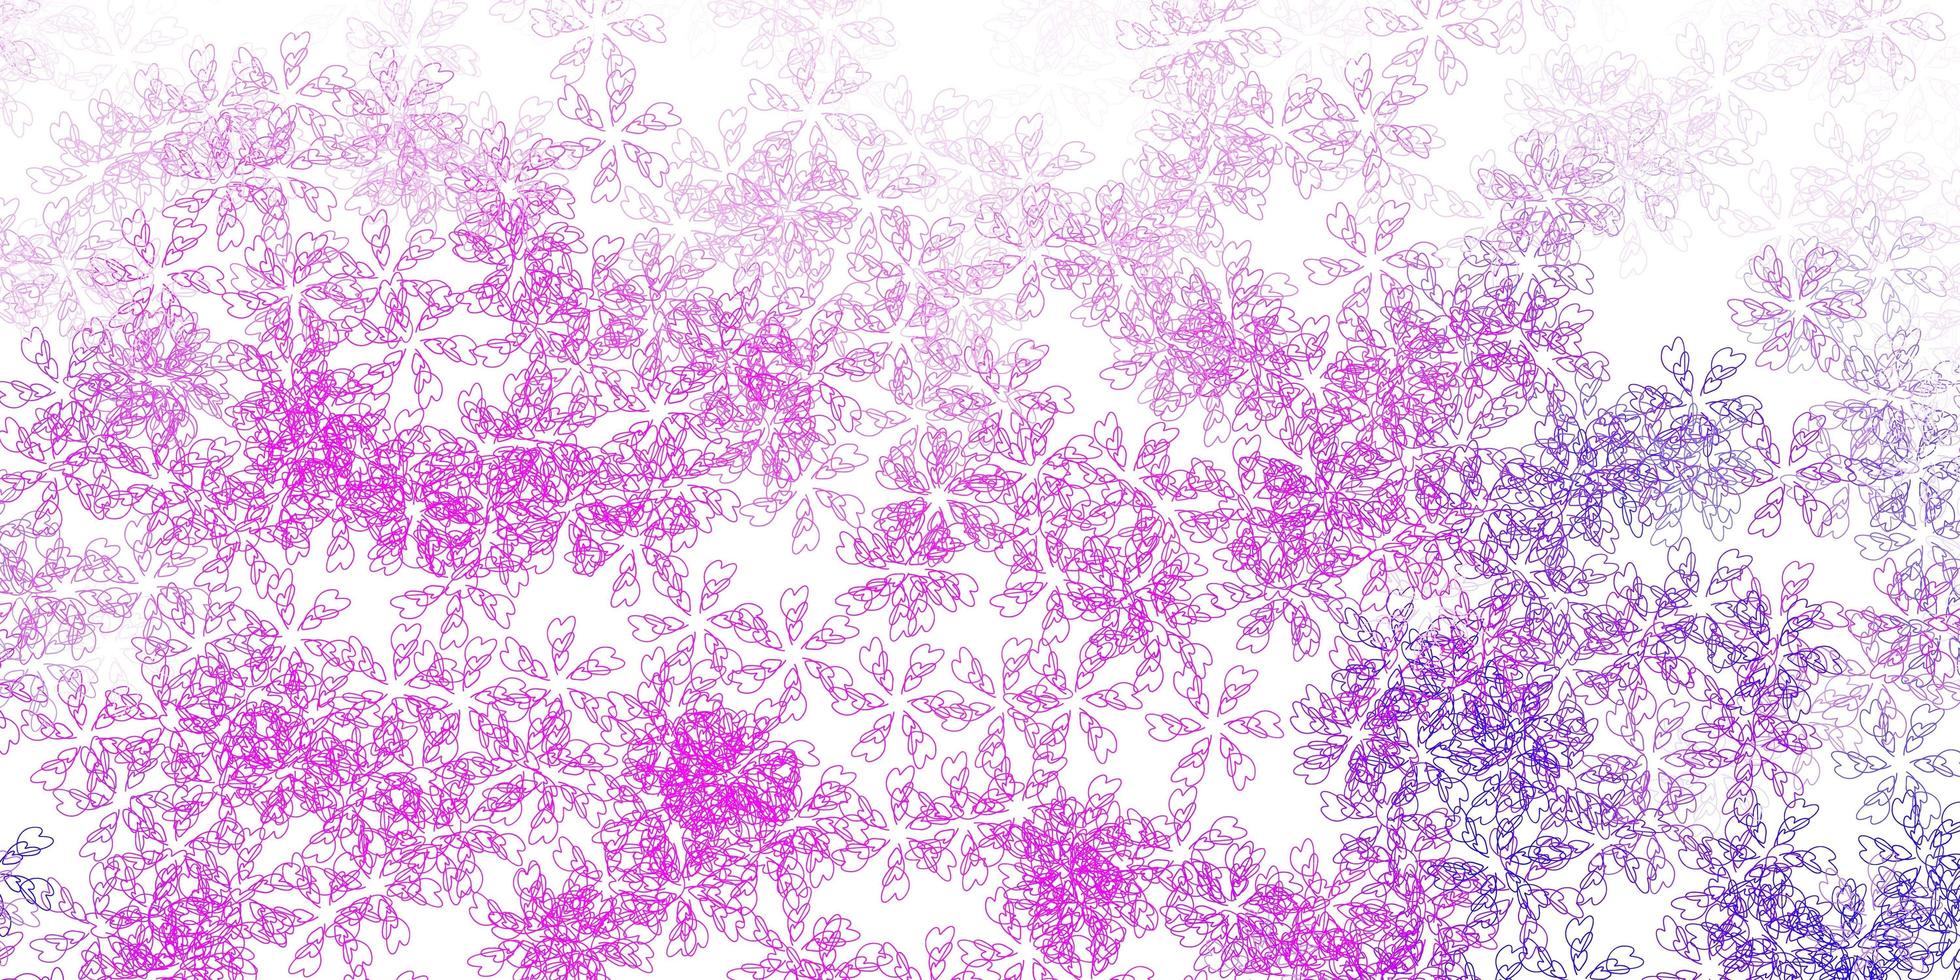 sfondo astratto vettoriale viola chiaro, rosa con foglie.